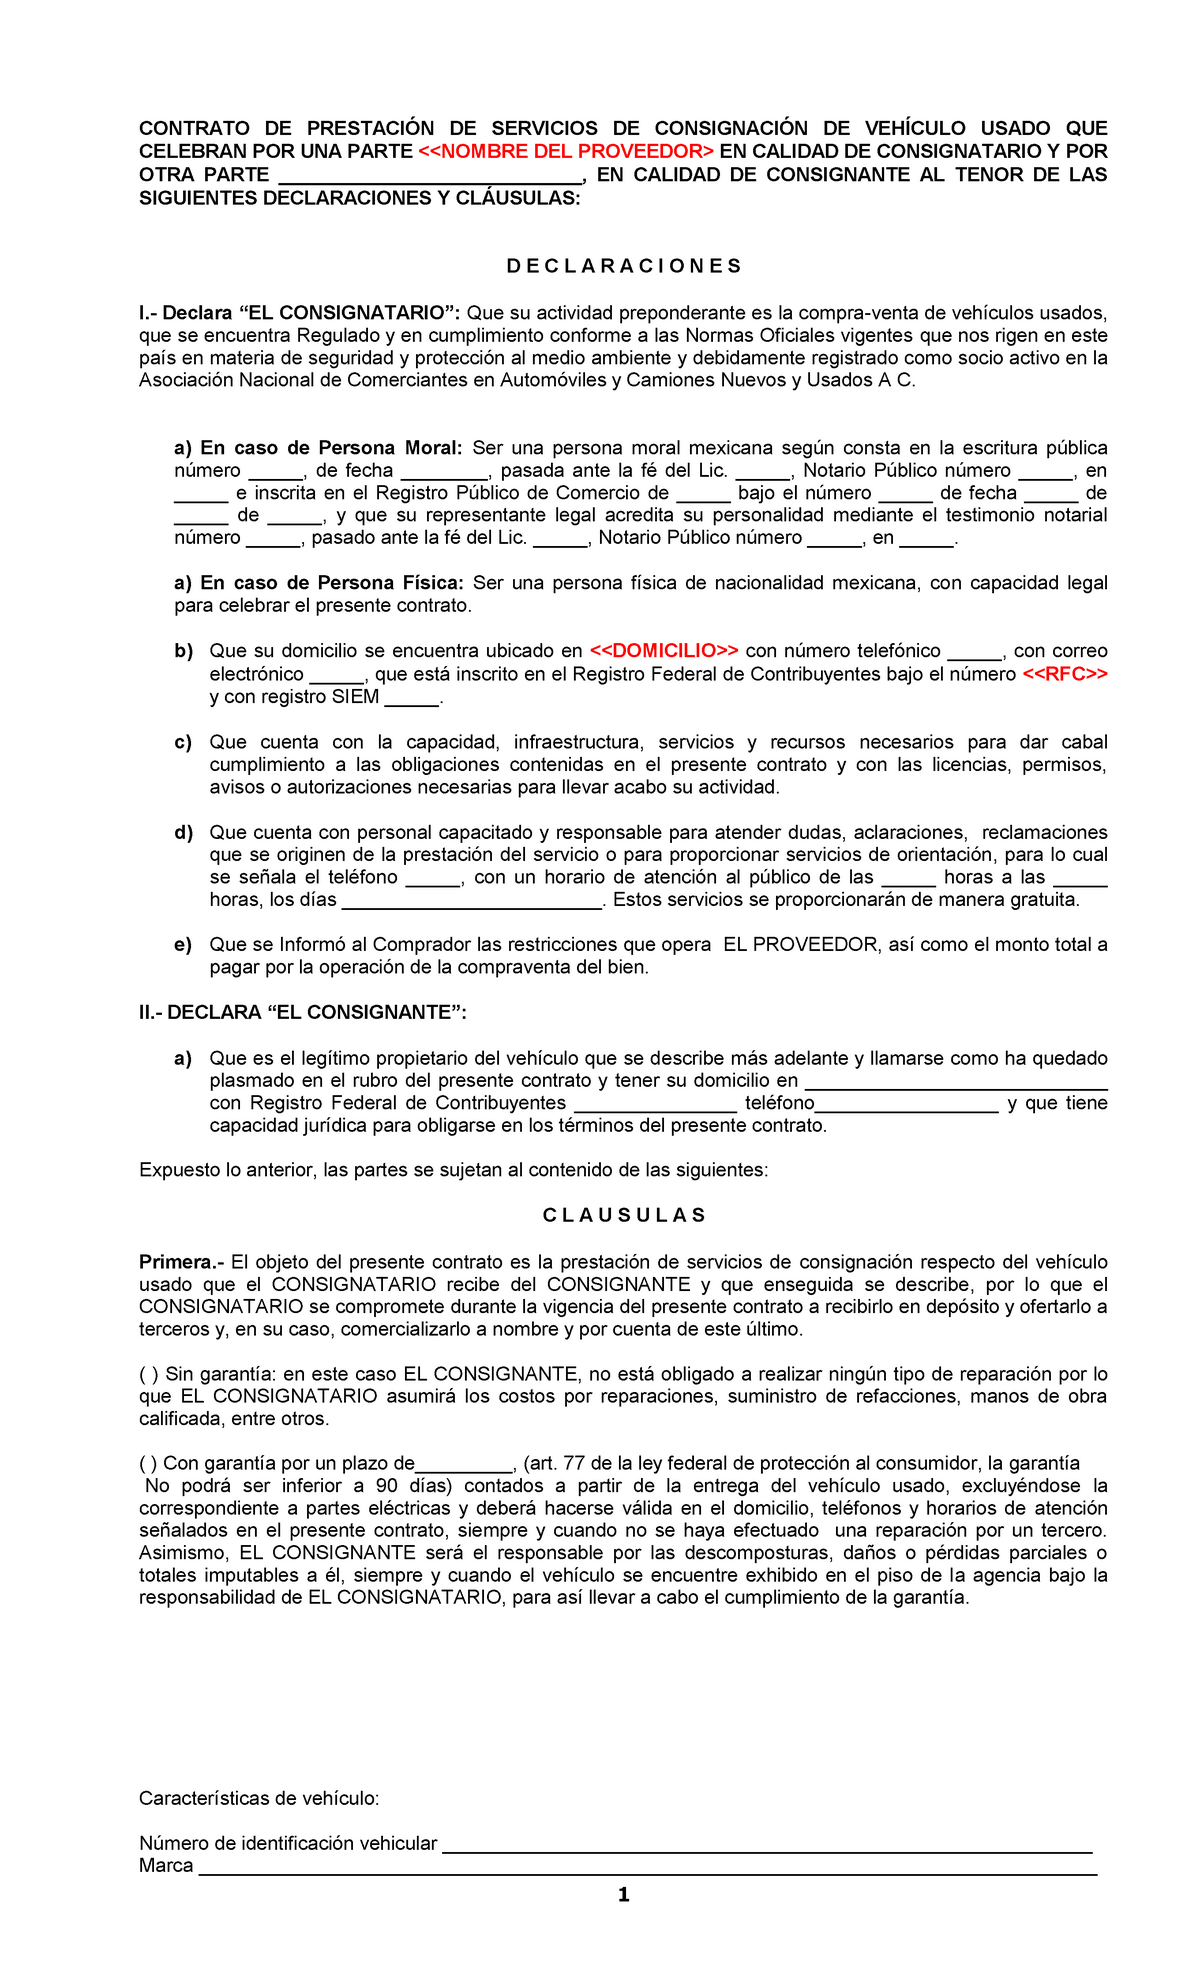 Contrato DE Prestacion DE Servicios DE Consignacion DE Vehiculo Usado ANCA  - 1 CONTRATO DE - Studocu